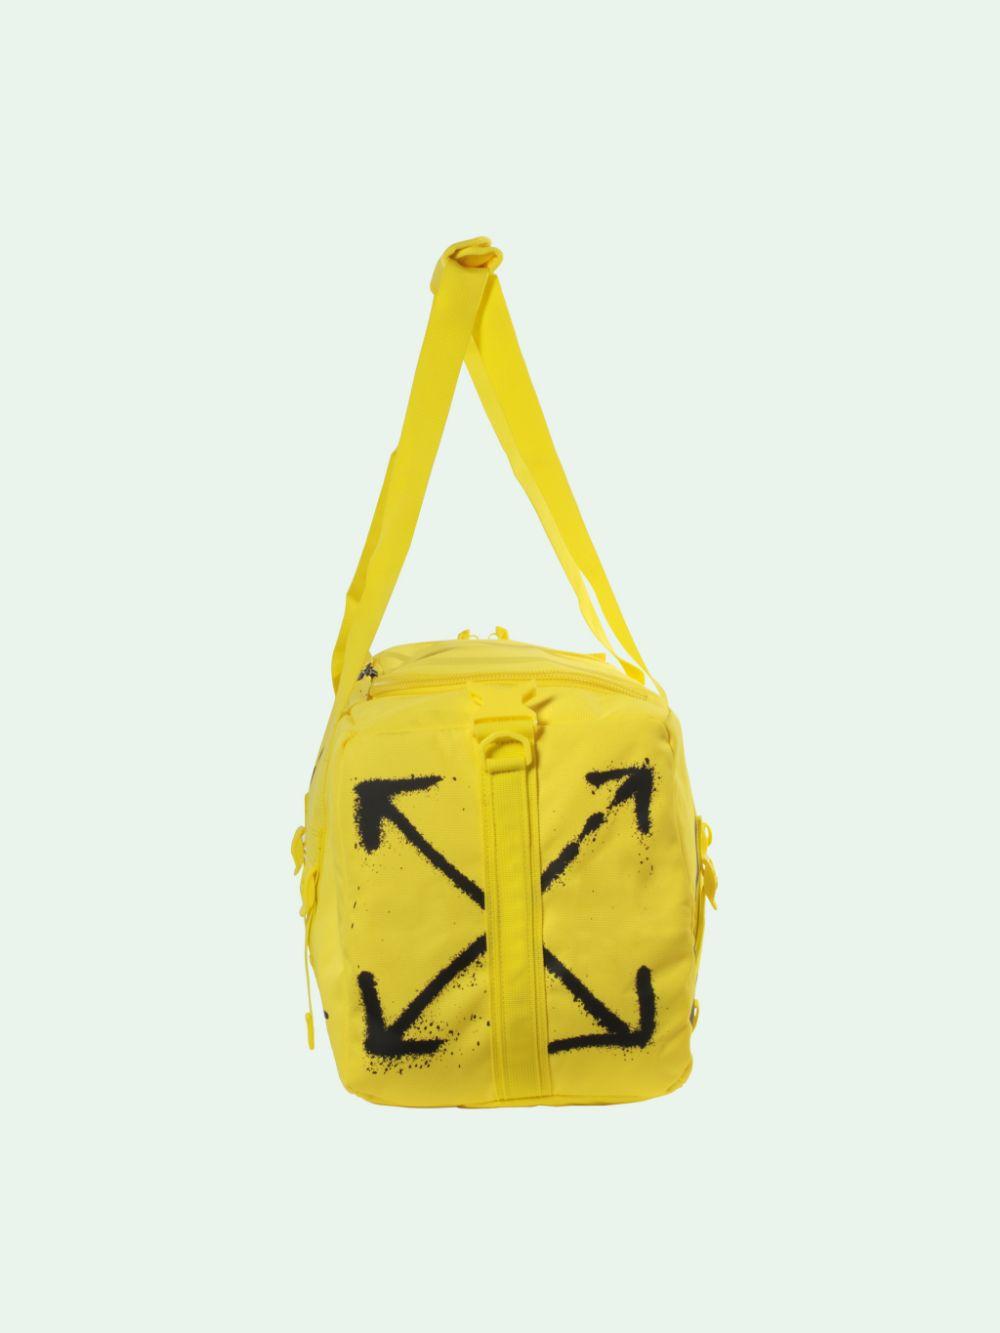 NIKE X OFF-WHITE Women's Yellow Nike Duffle Bag